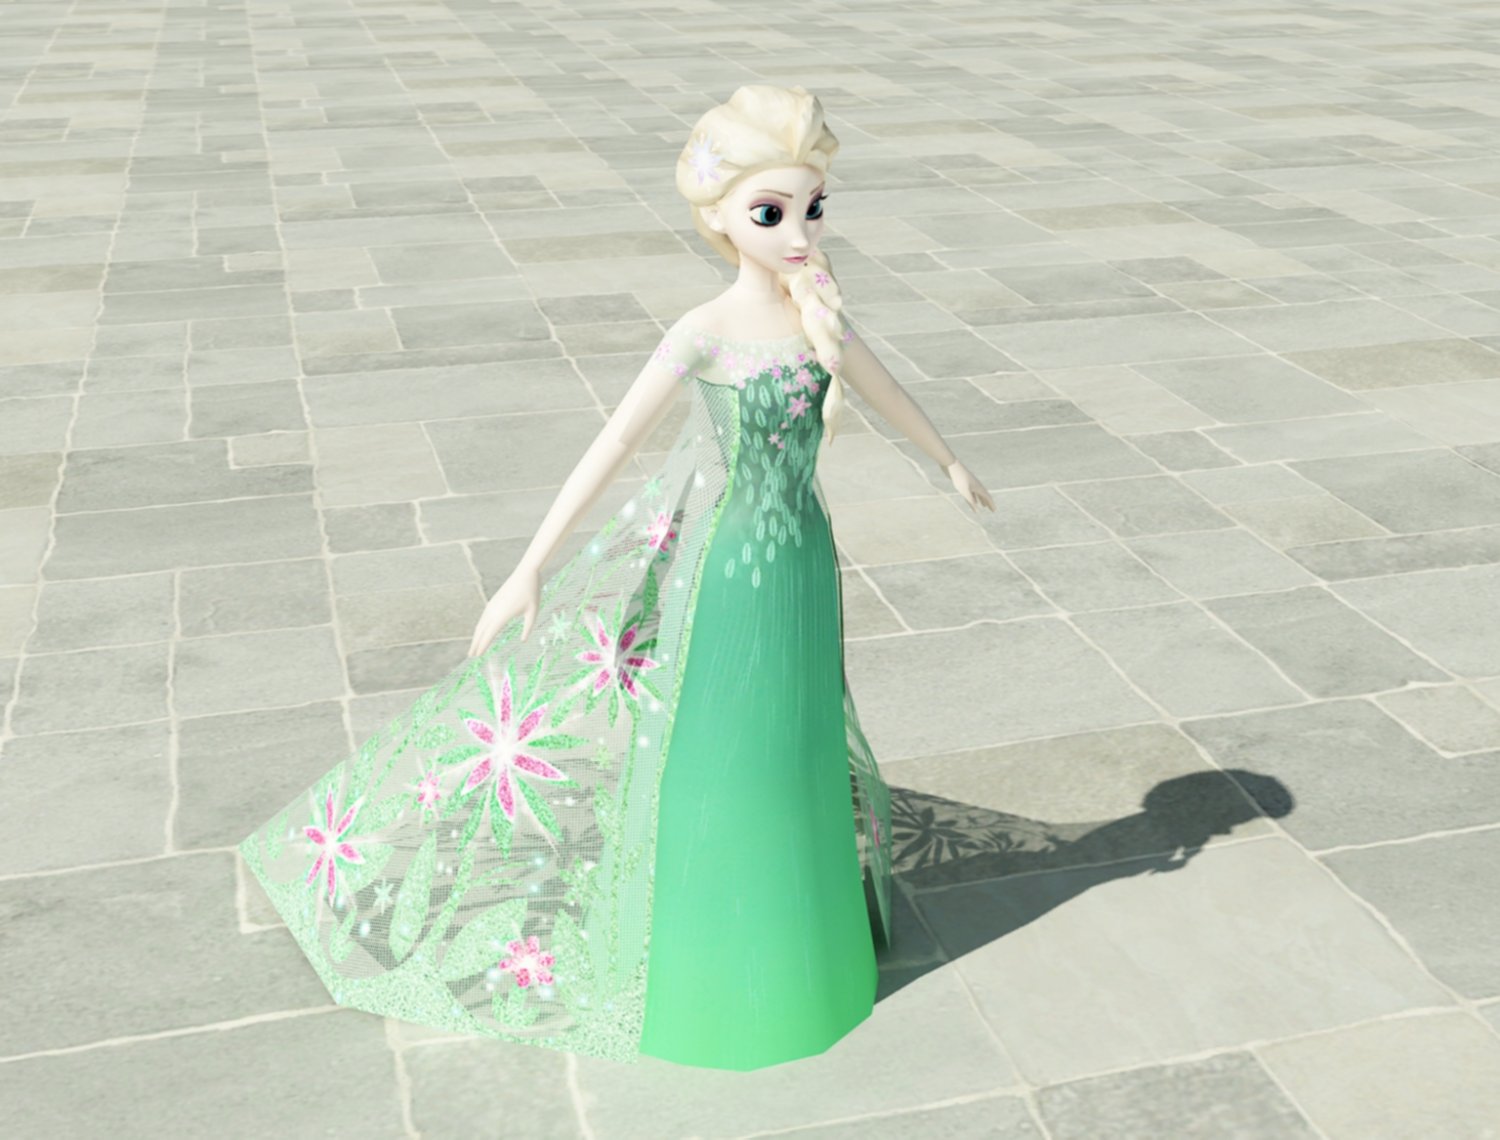 冰雪奇缘艾莎3D模型0